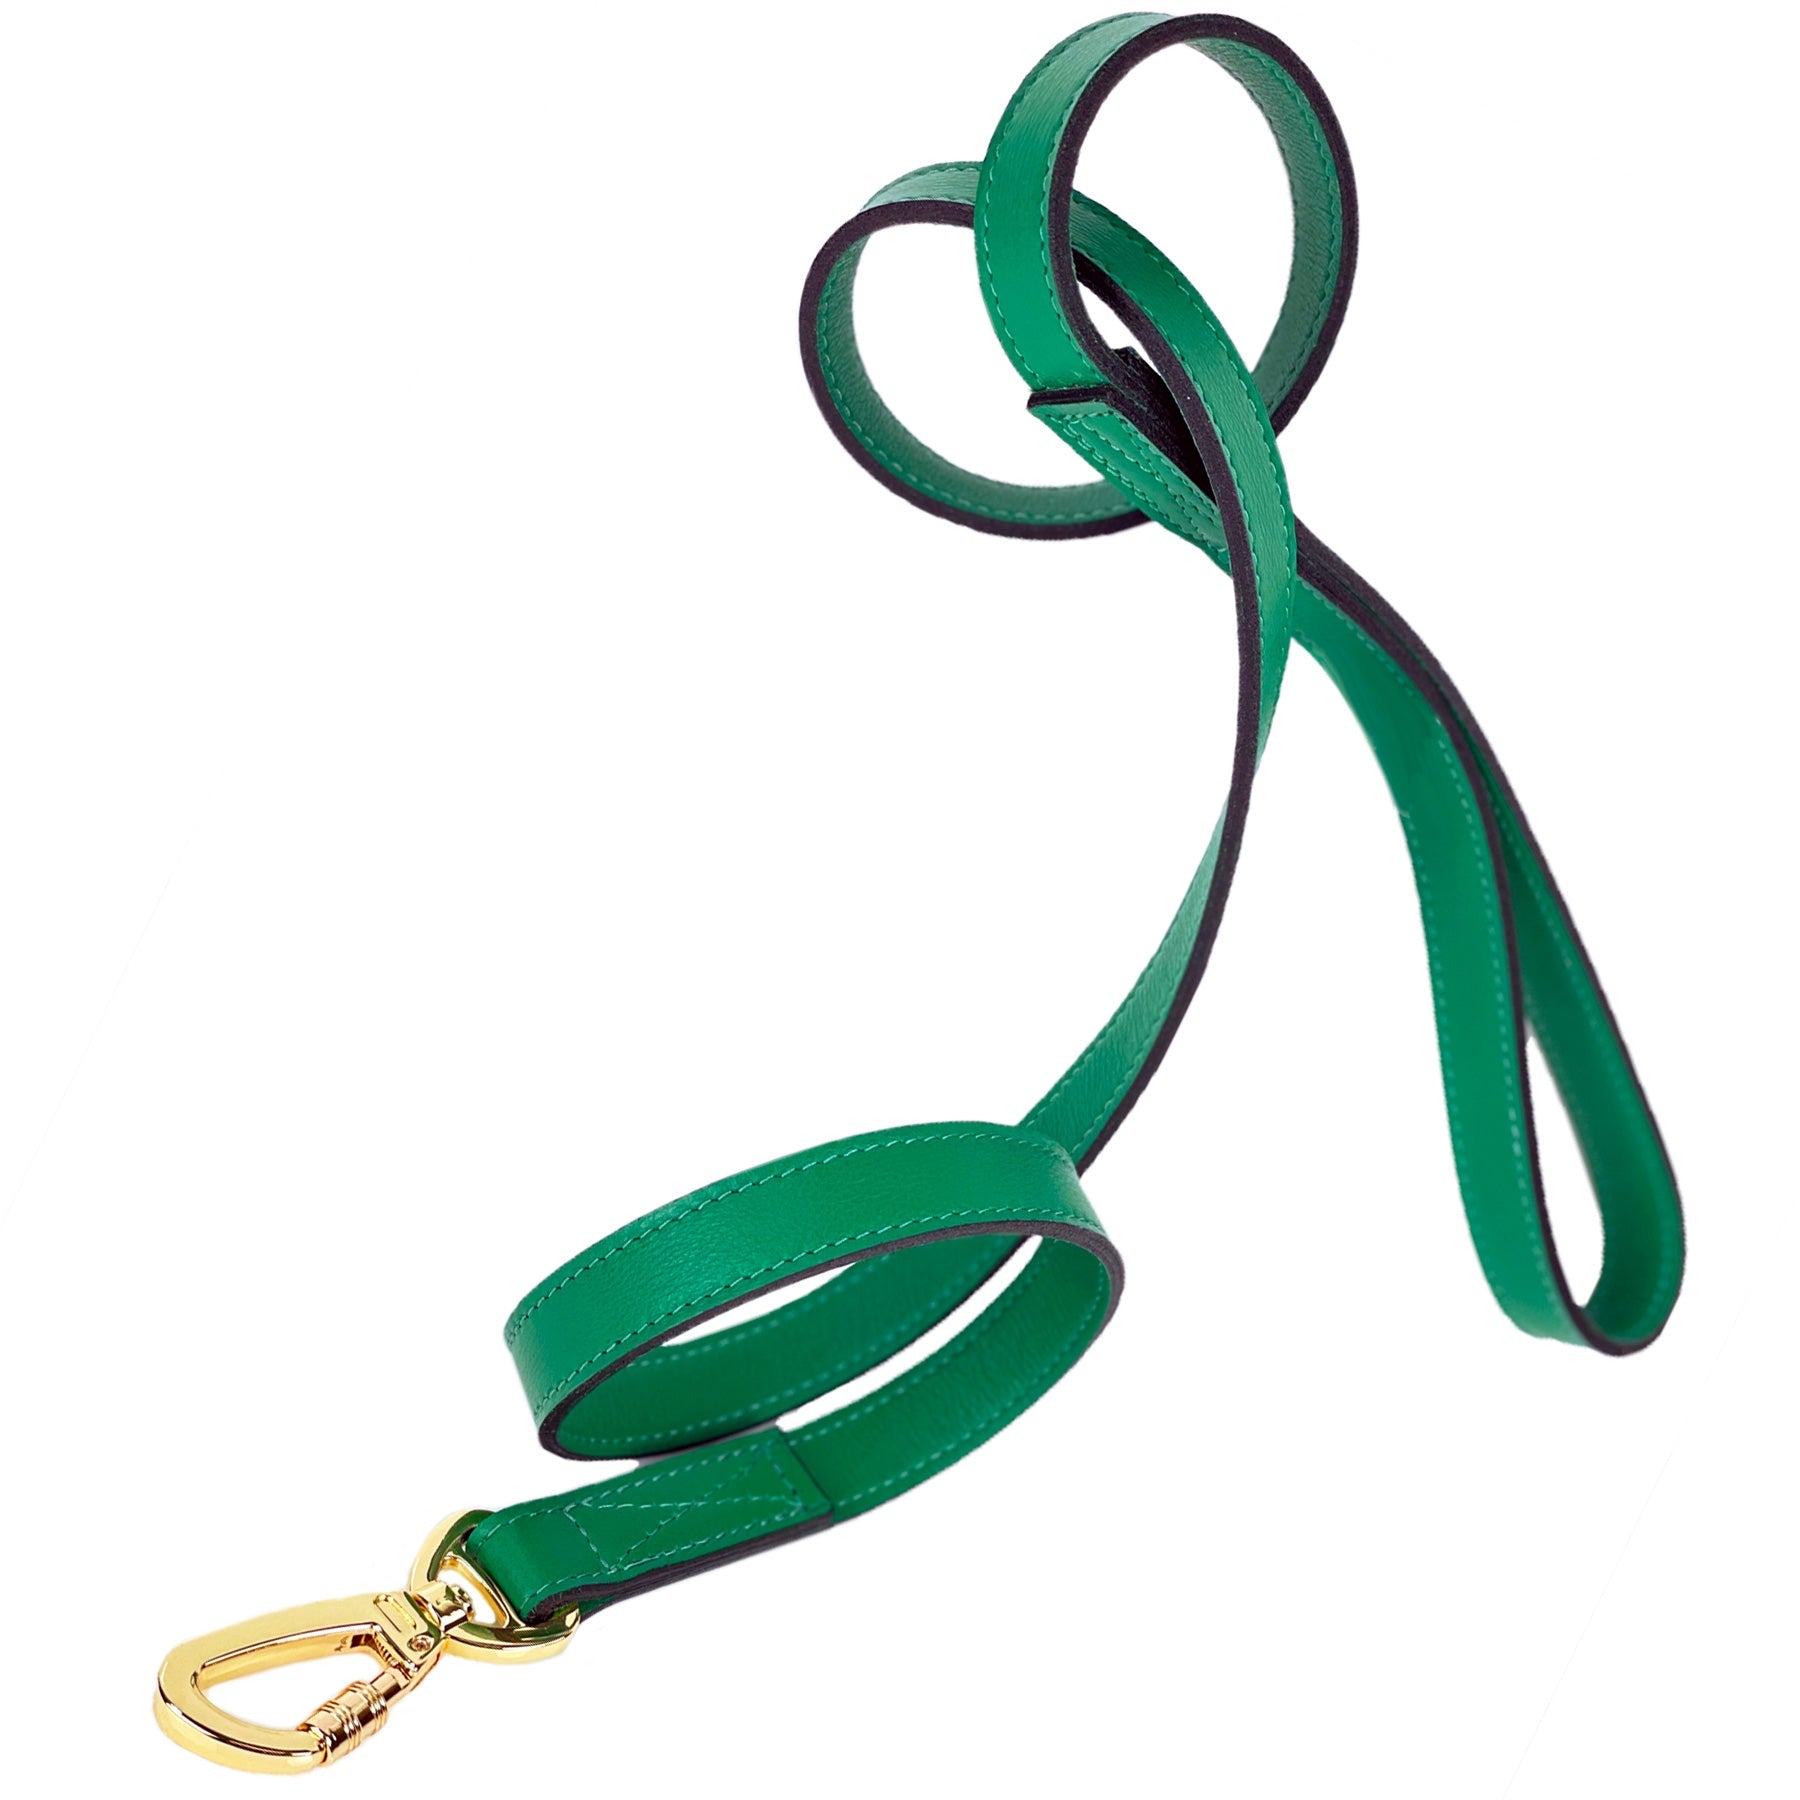 Au Naturale Dog Leash in Emerald Green